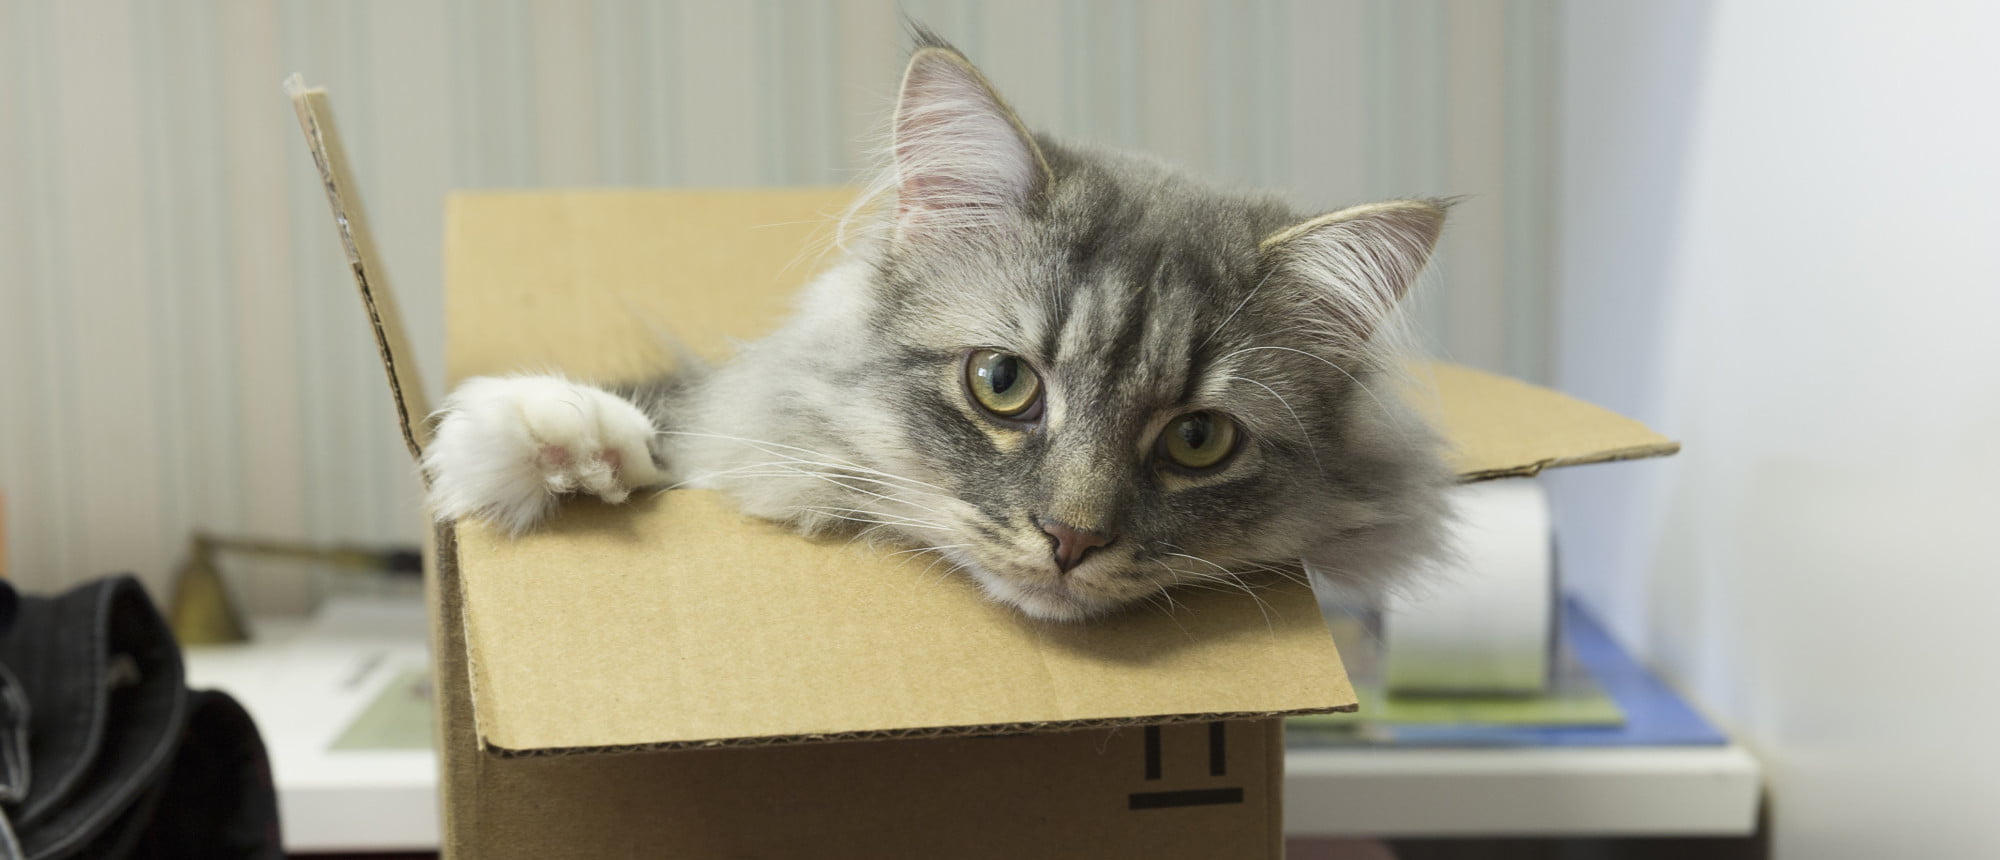 o WHY CATS LIKE BOXES facebook e1436116068243 لماذا تحب القطط صناديق الكرتون؟ مجلة نقطة العلمية